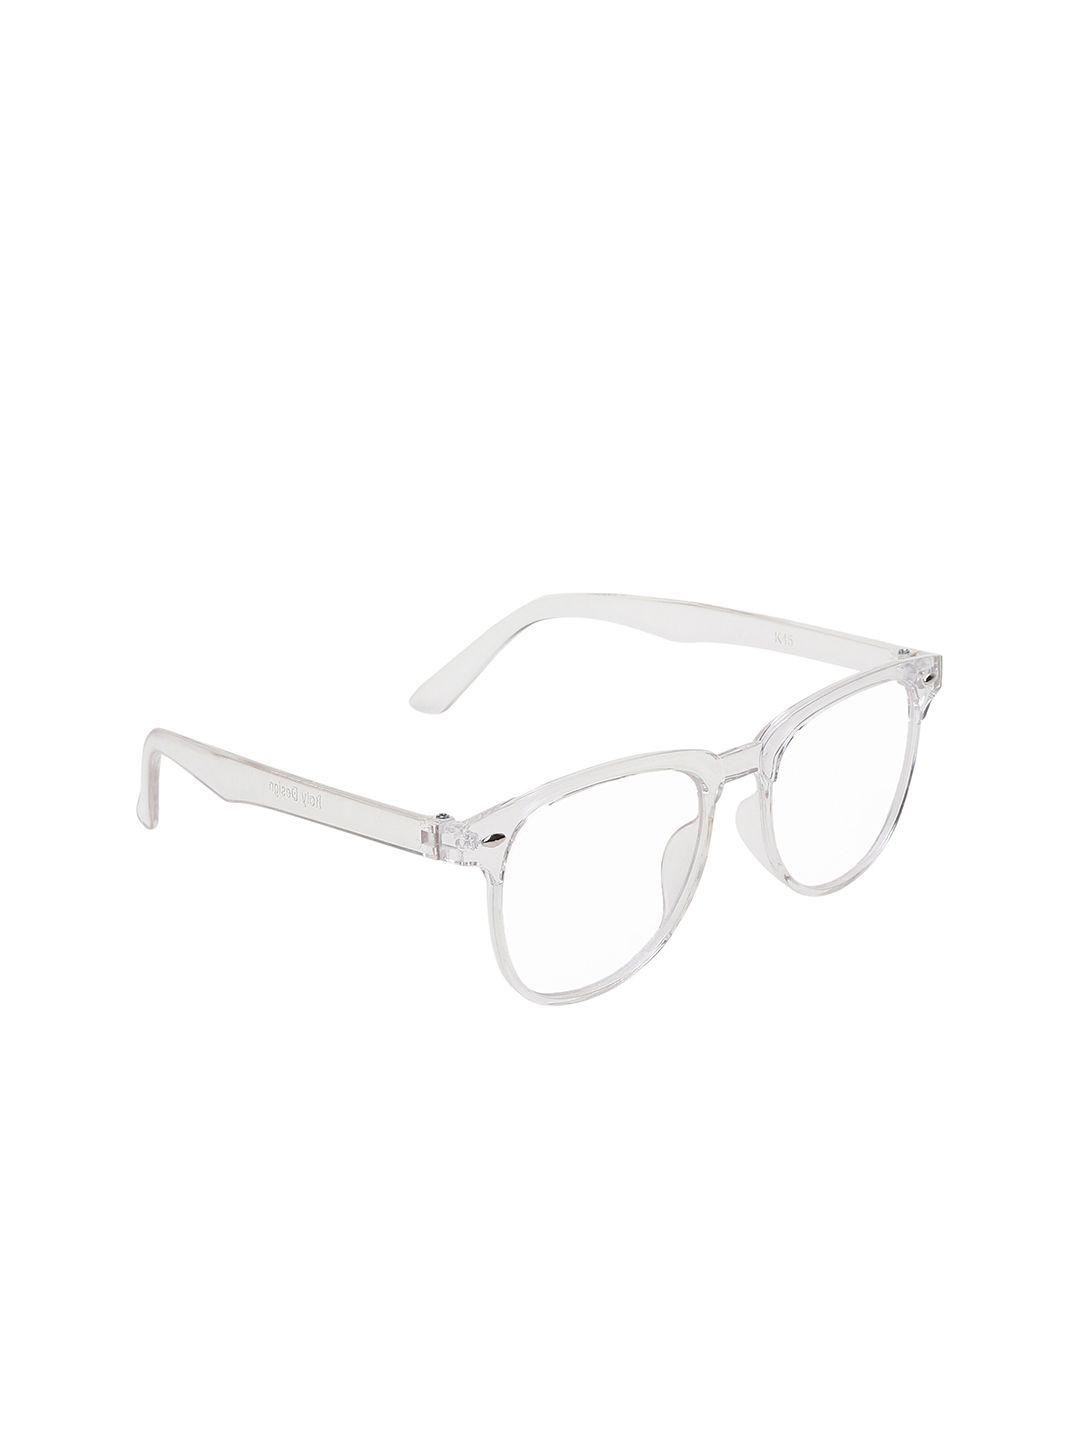 garth unisex lens & wayfarer sunglasses with uv protected lens